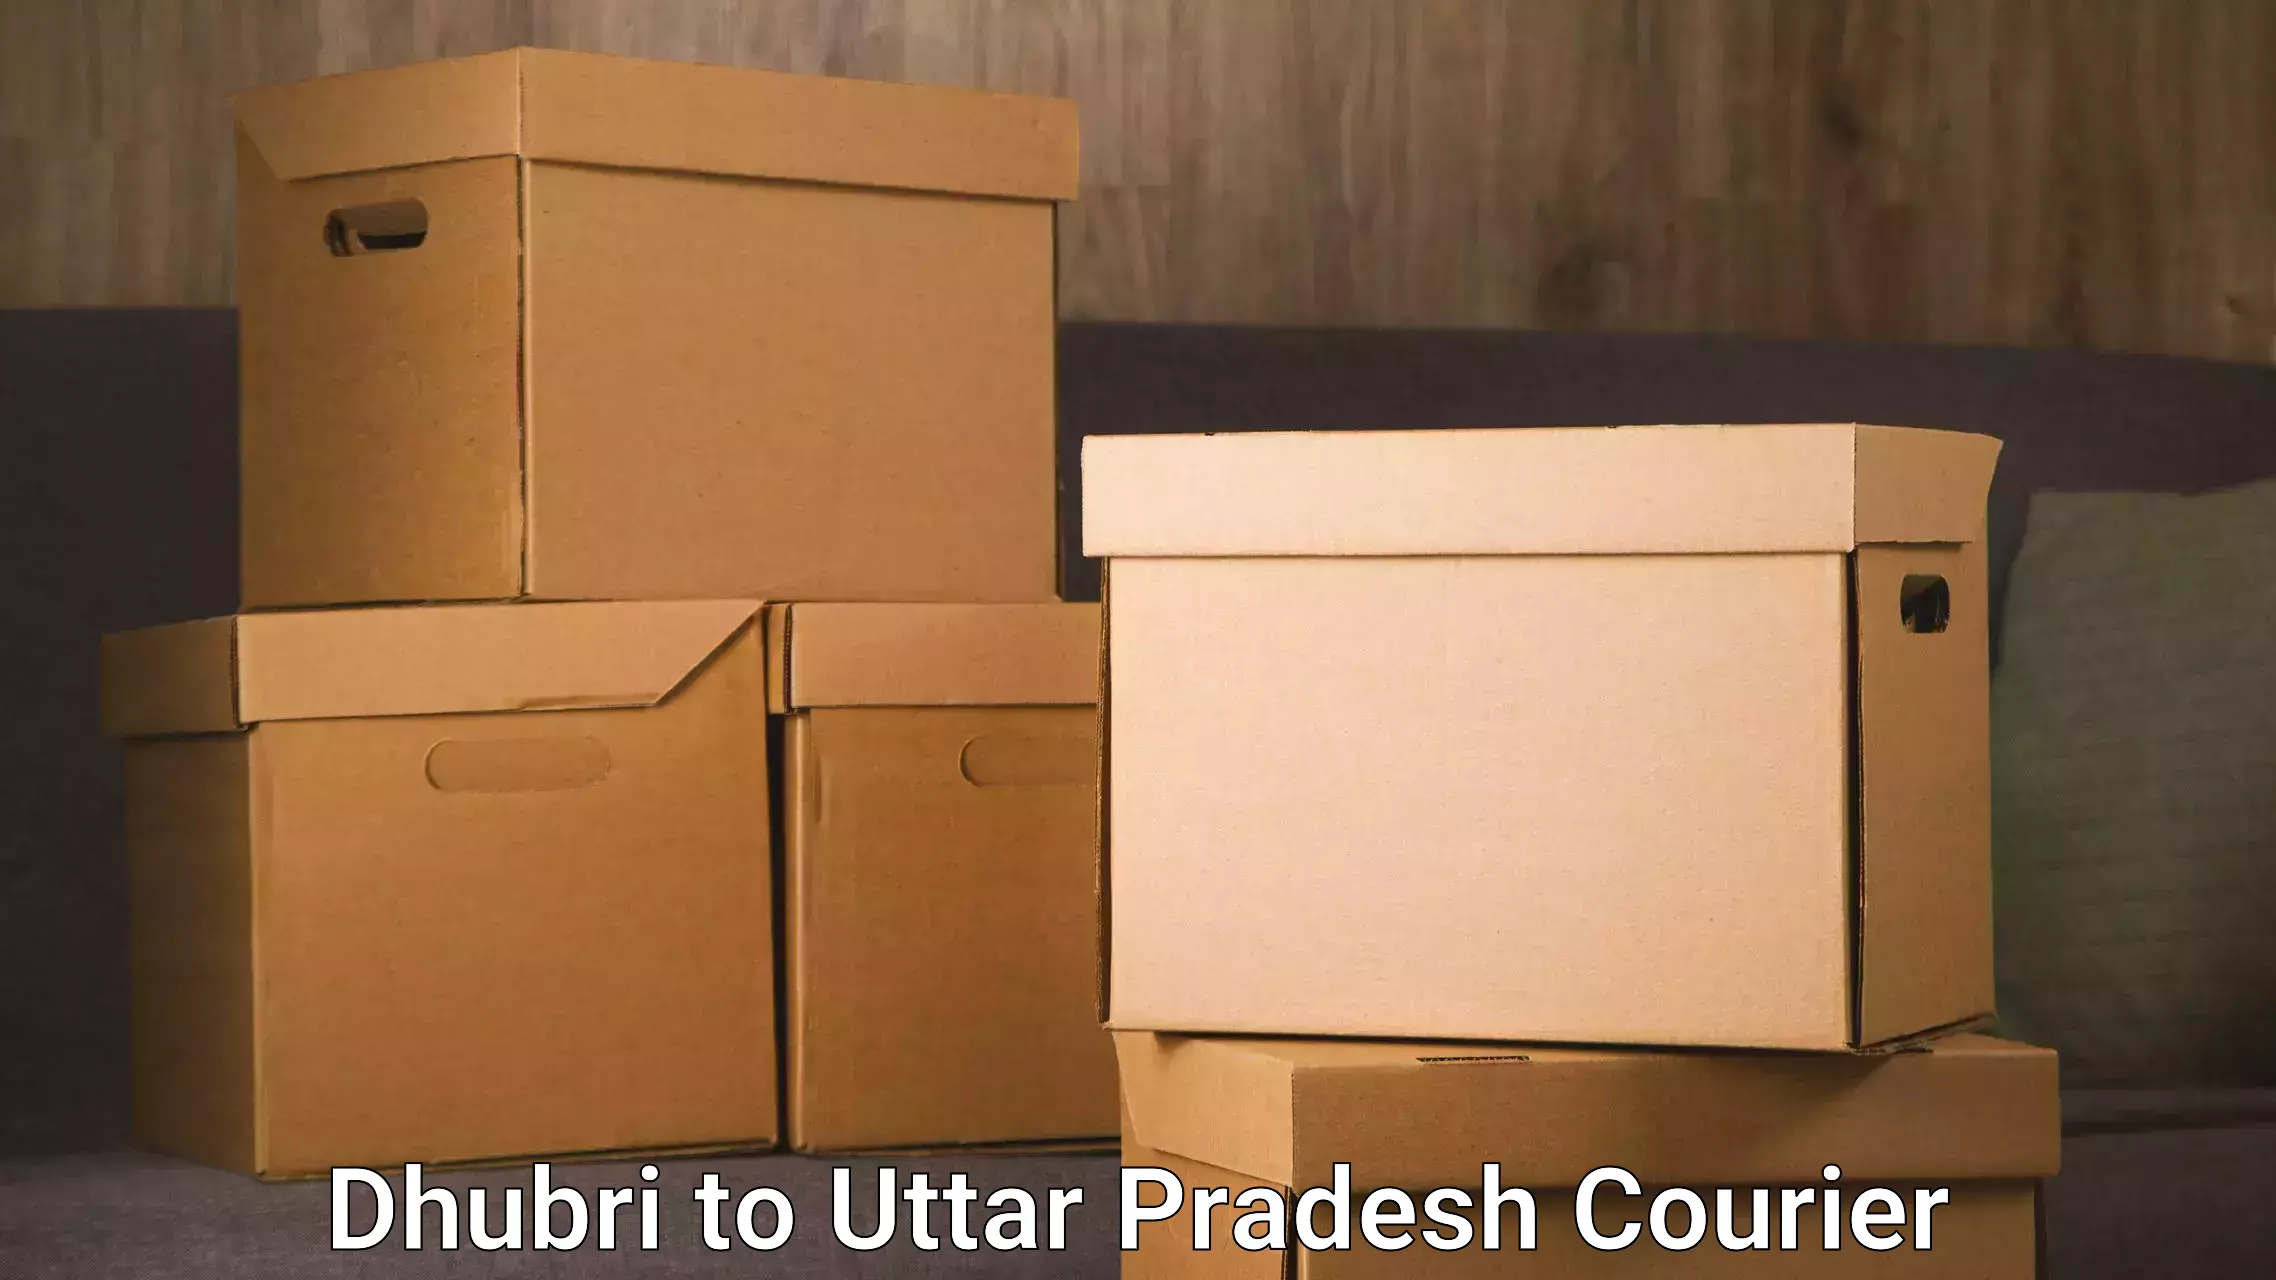 Affordable parcel service Dhubri to Karchhana